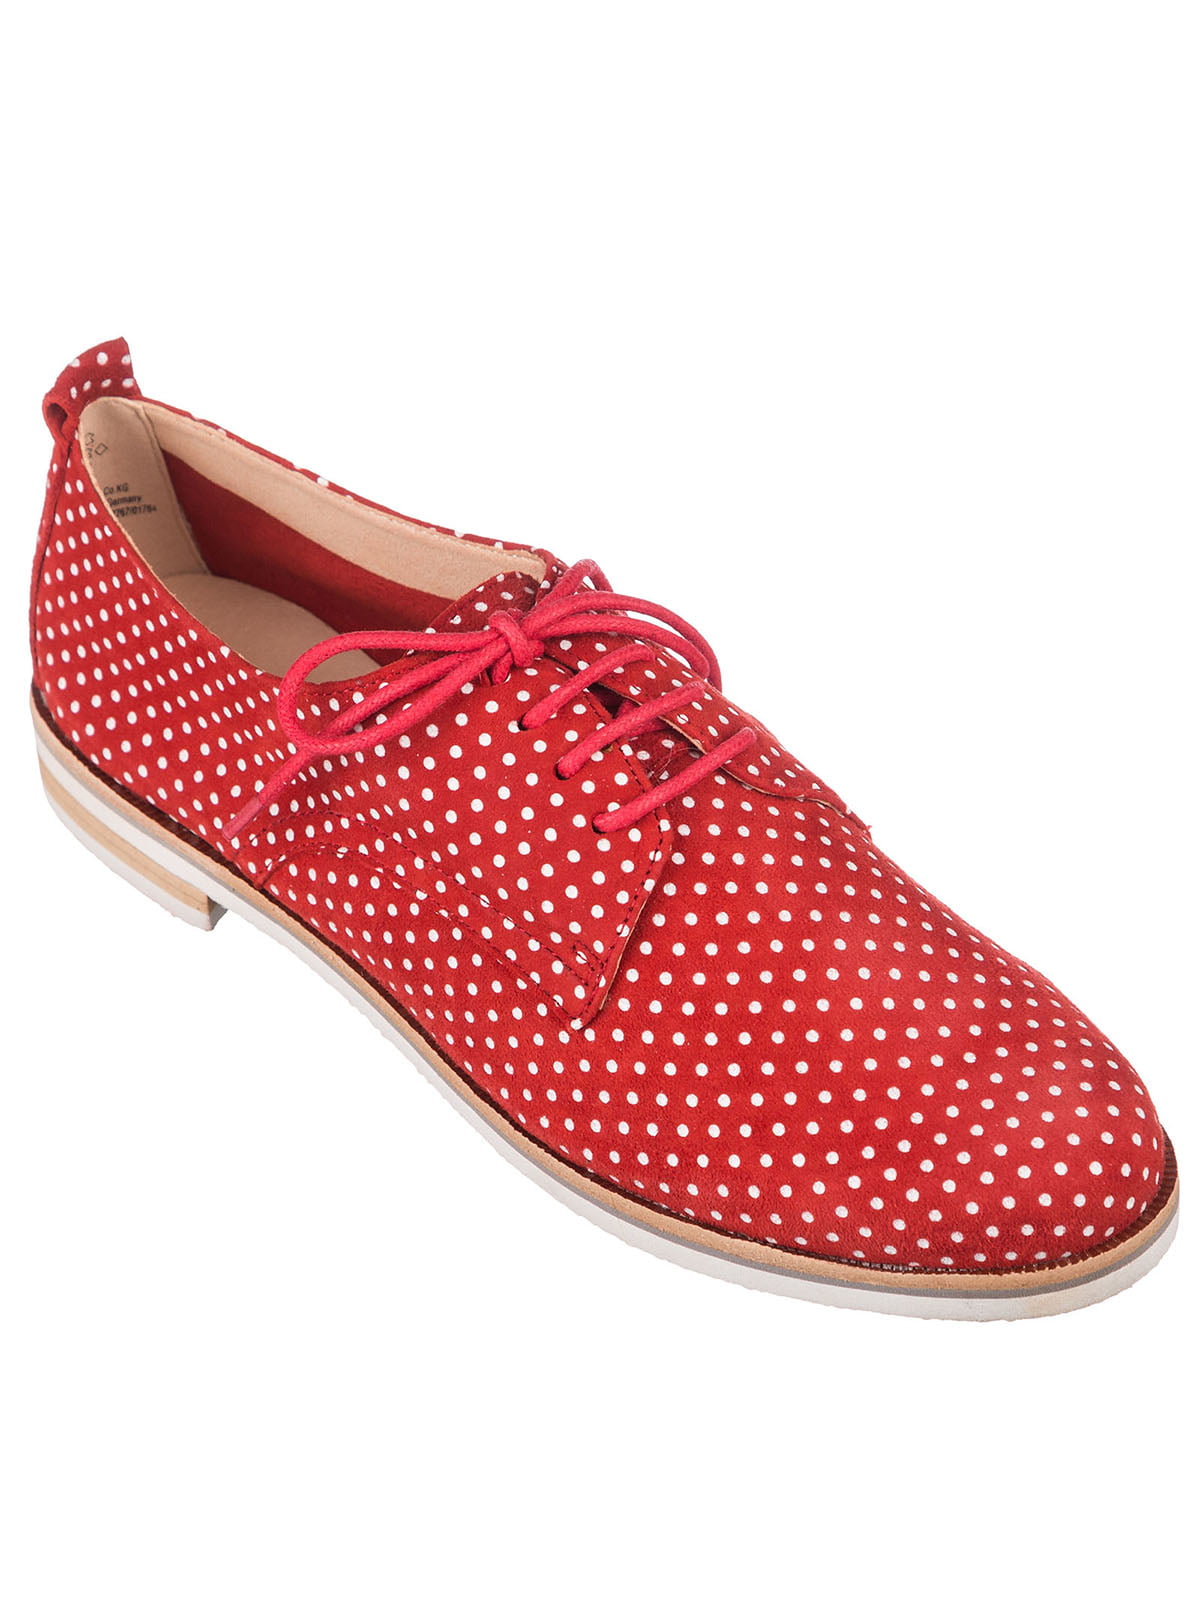 Туфли красные в горошек | 4153625